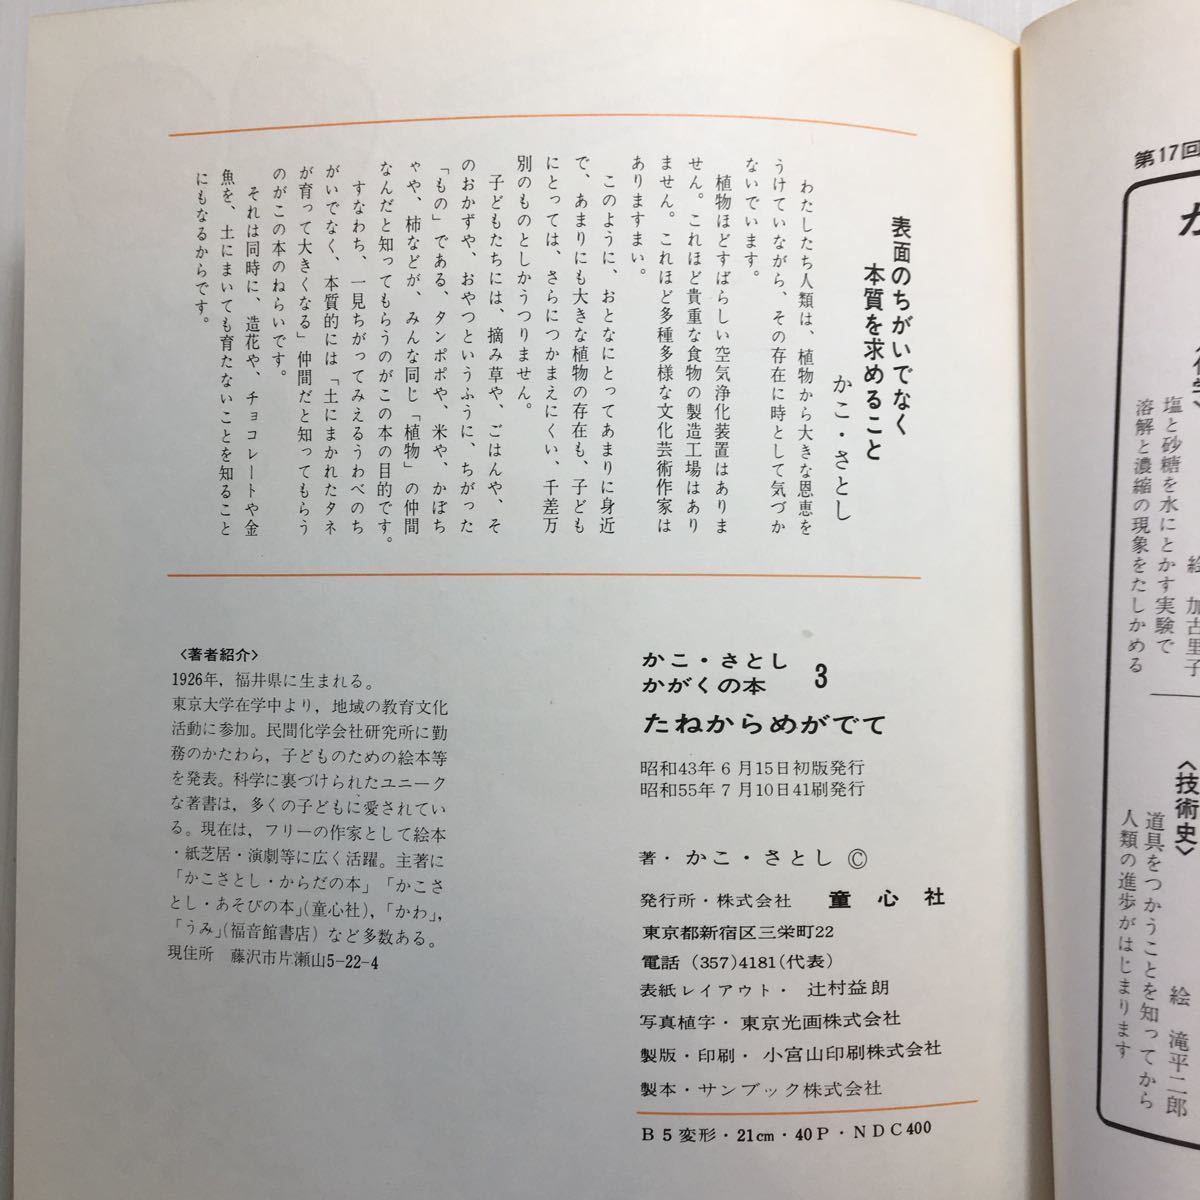 zaa-177♪たねからめがでて (かこさとし・かがくの本 3) 1980/7/10 かこ さとし (著), 若山 憲 (イラスト)